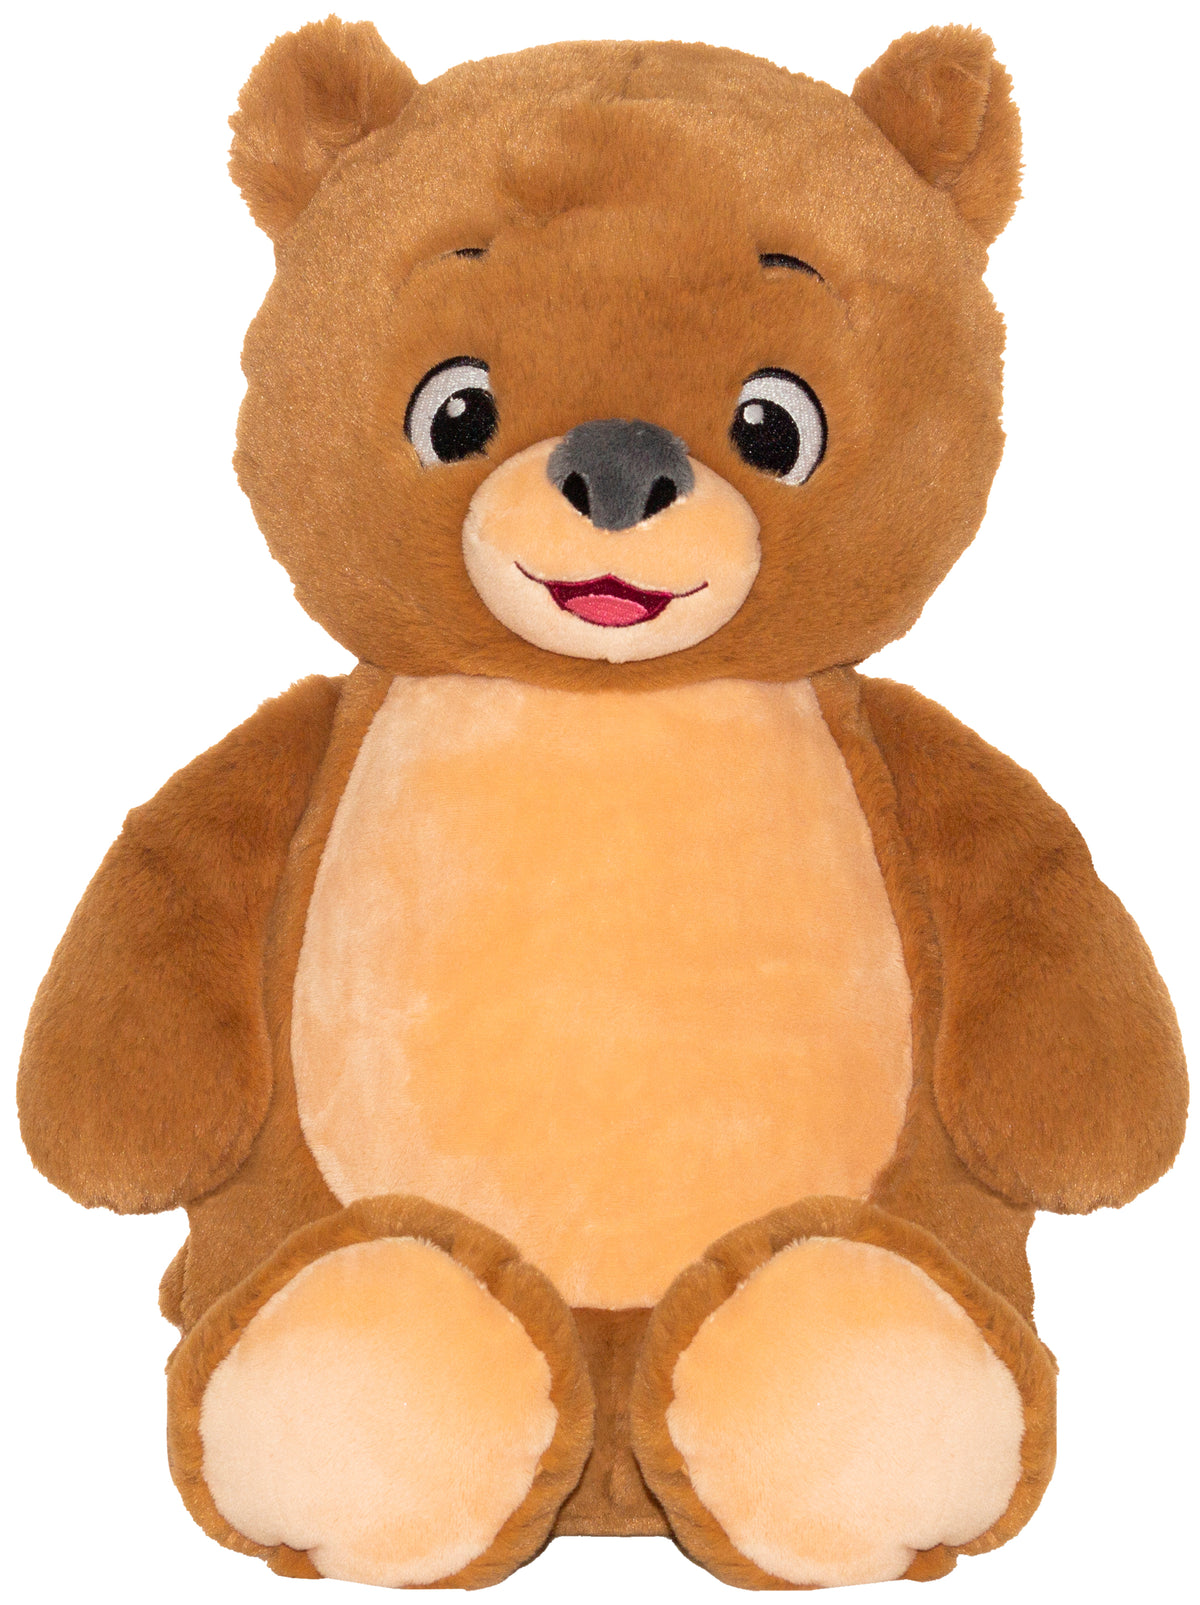 theodore teddy bear